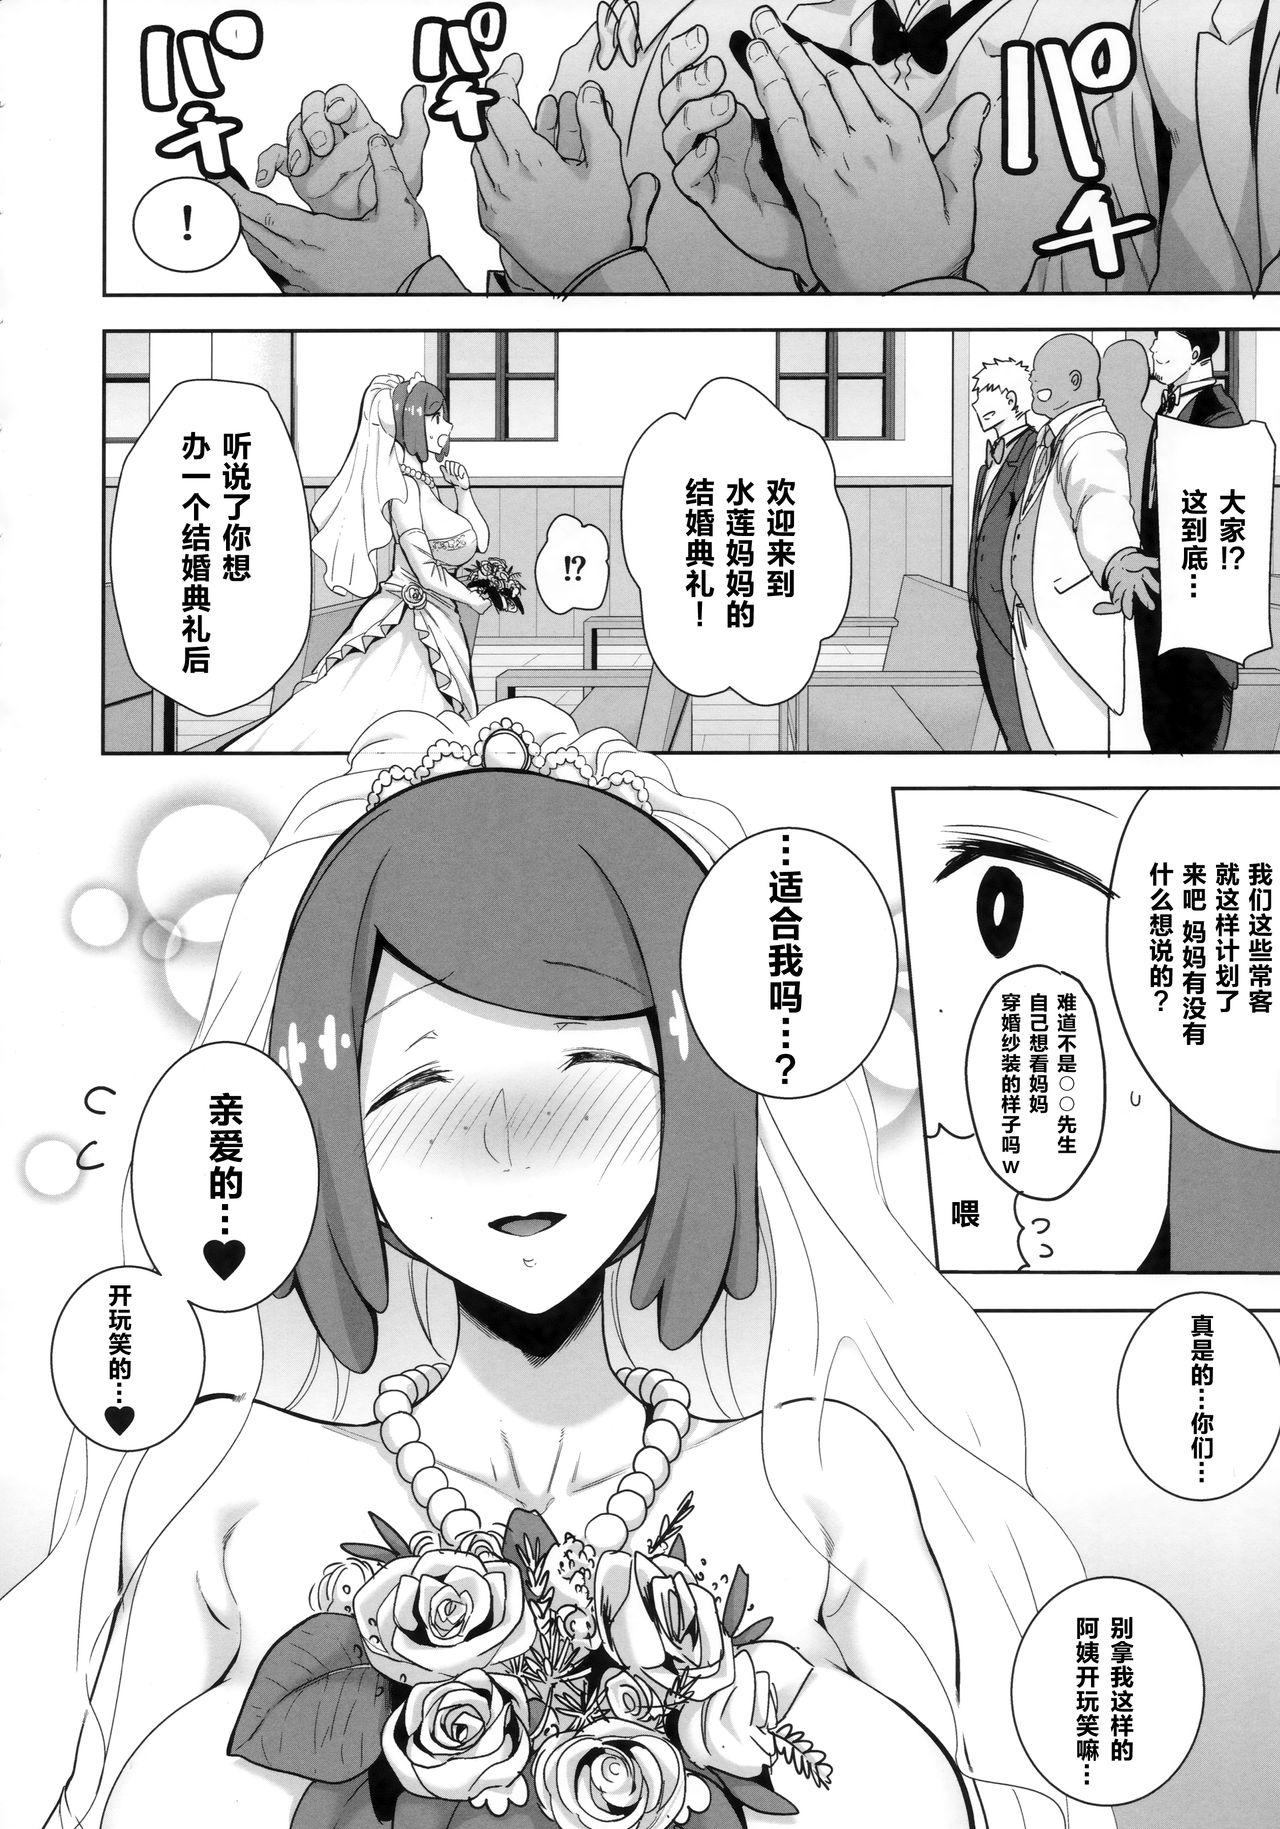 Clothed Sex Alola no Yoru no Sugata 6 - Pokemon Gay Fetish - Page 8